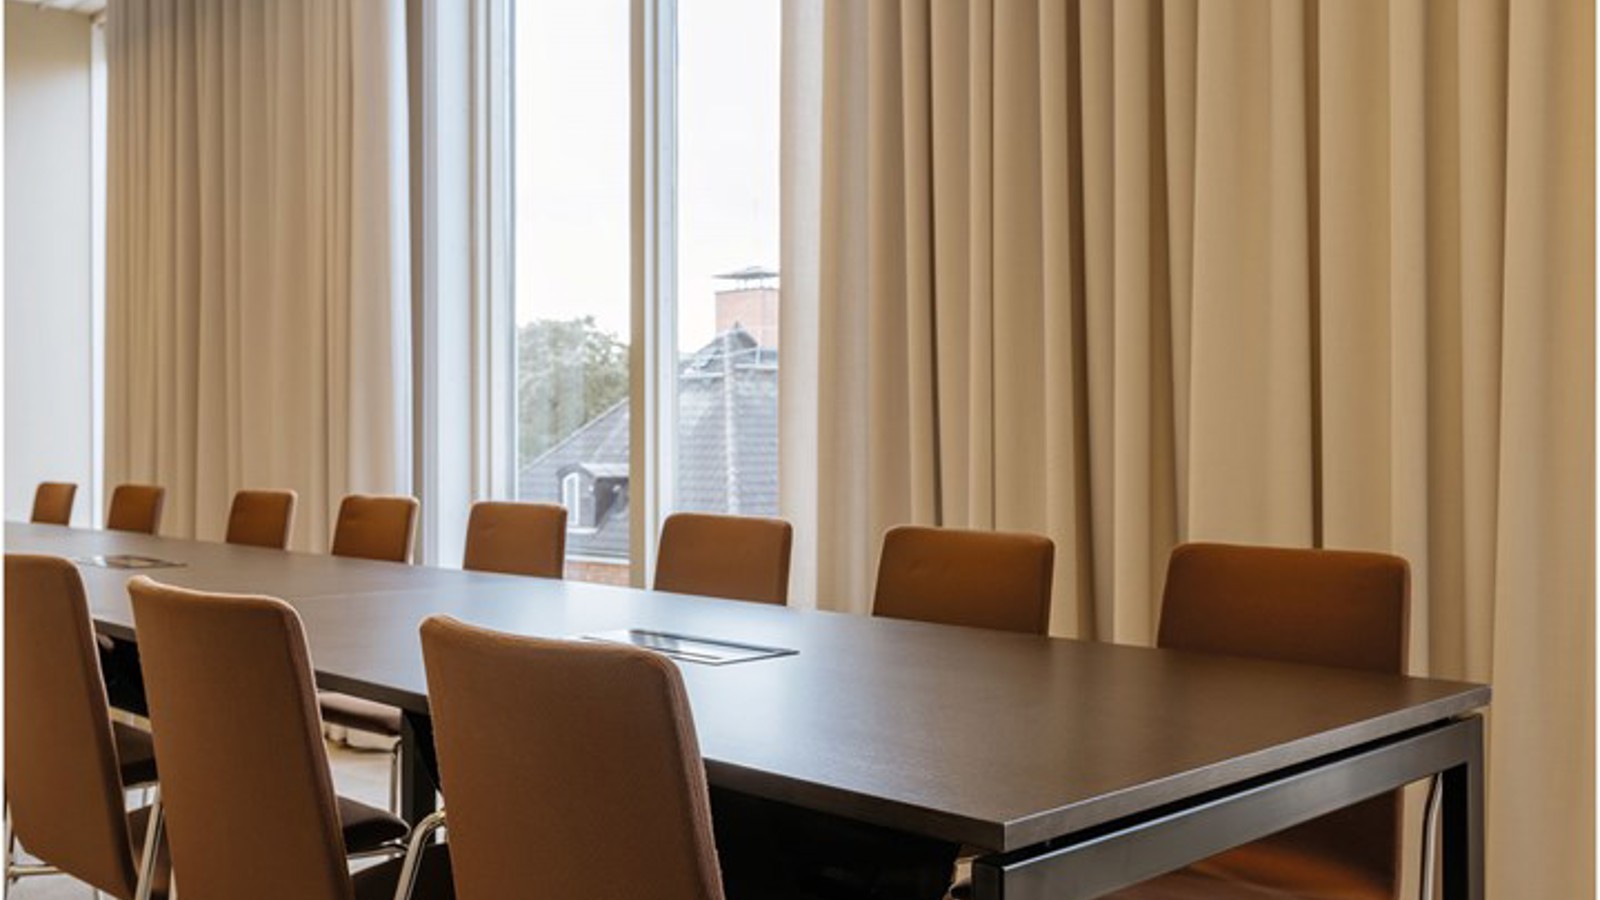 Konferensrum med styrelsesittning, brunt bord, bruna stolar, stora fönster och ljusa draperier